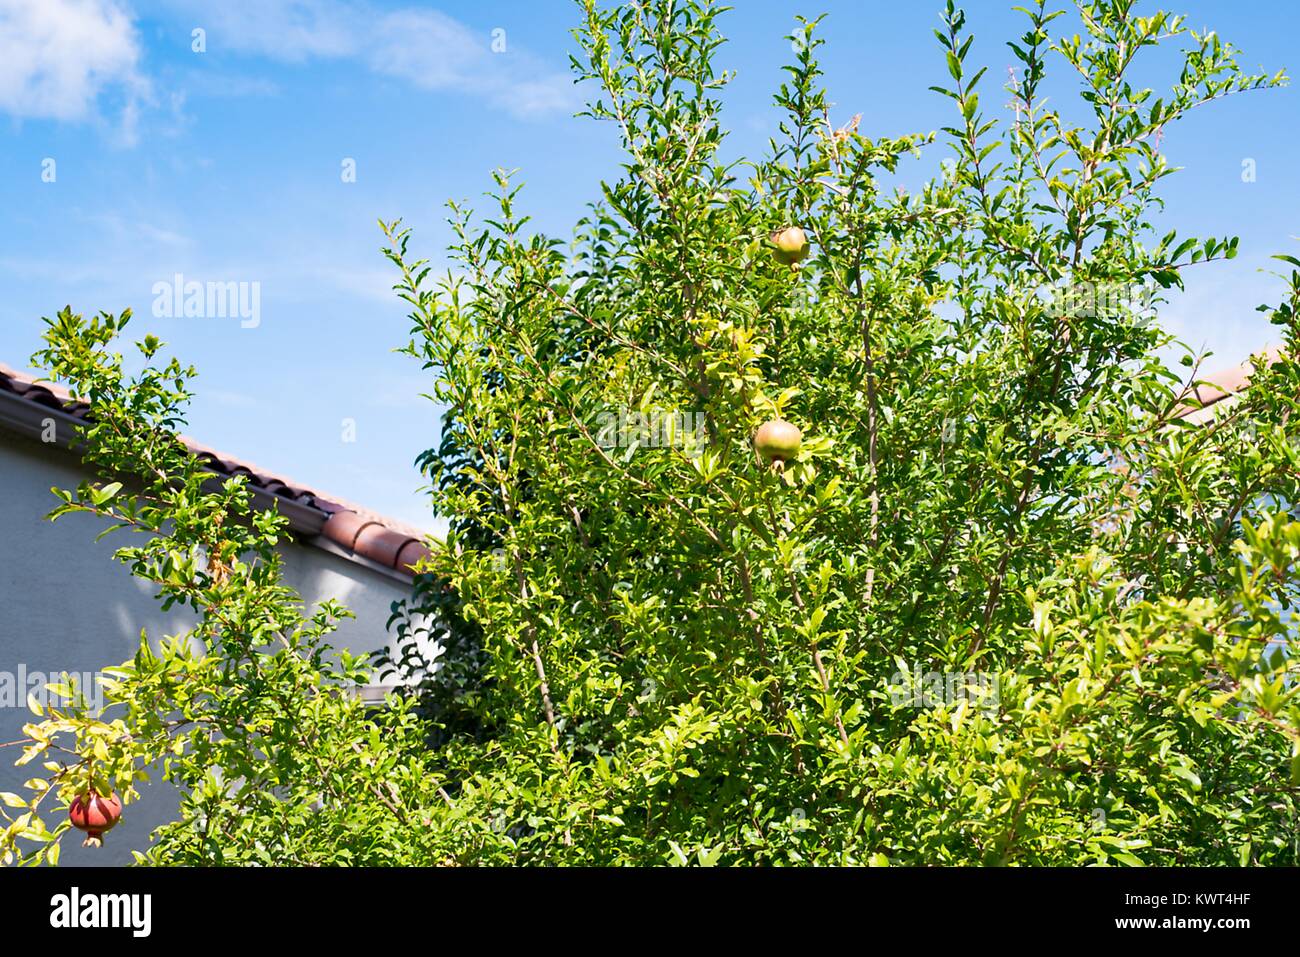 De plus en plus des grenades sur un arbre contre un ciel bleu pendant la fête juive de Roch hachana, le 21 septembre 2017. Dans la religion juive, l'pomegrante est souvent mangé à Roch Hachana comme un symbole des commandements de la Torah (Bible juive). Banque D'Images